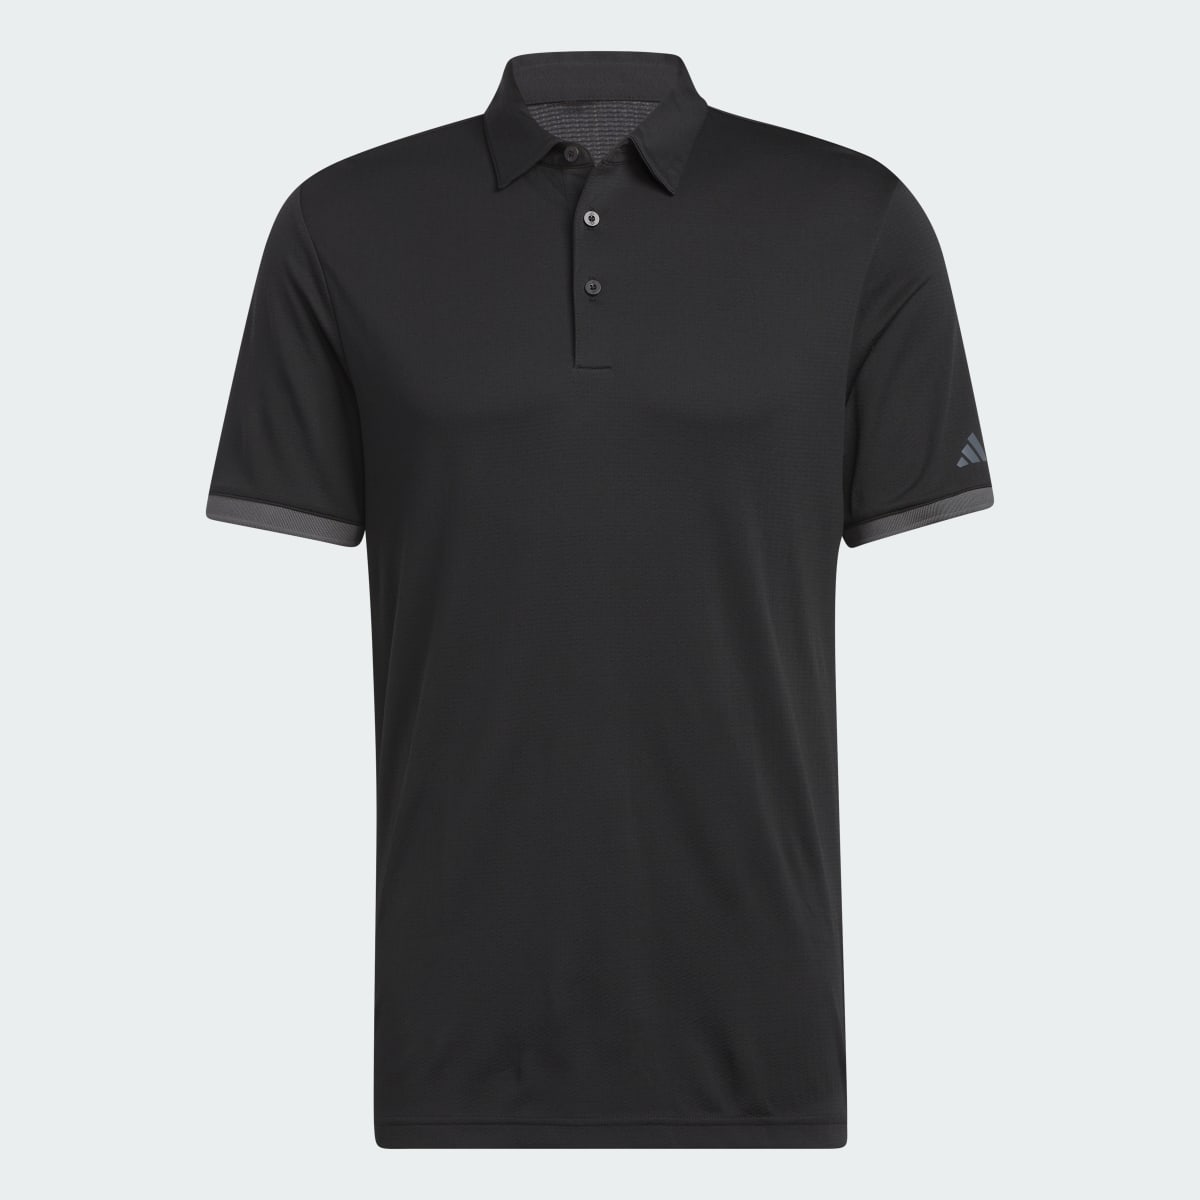 Adidas HEAT.RDY Golf Polo Shirt. 5